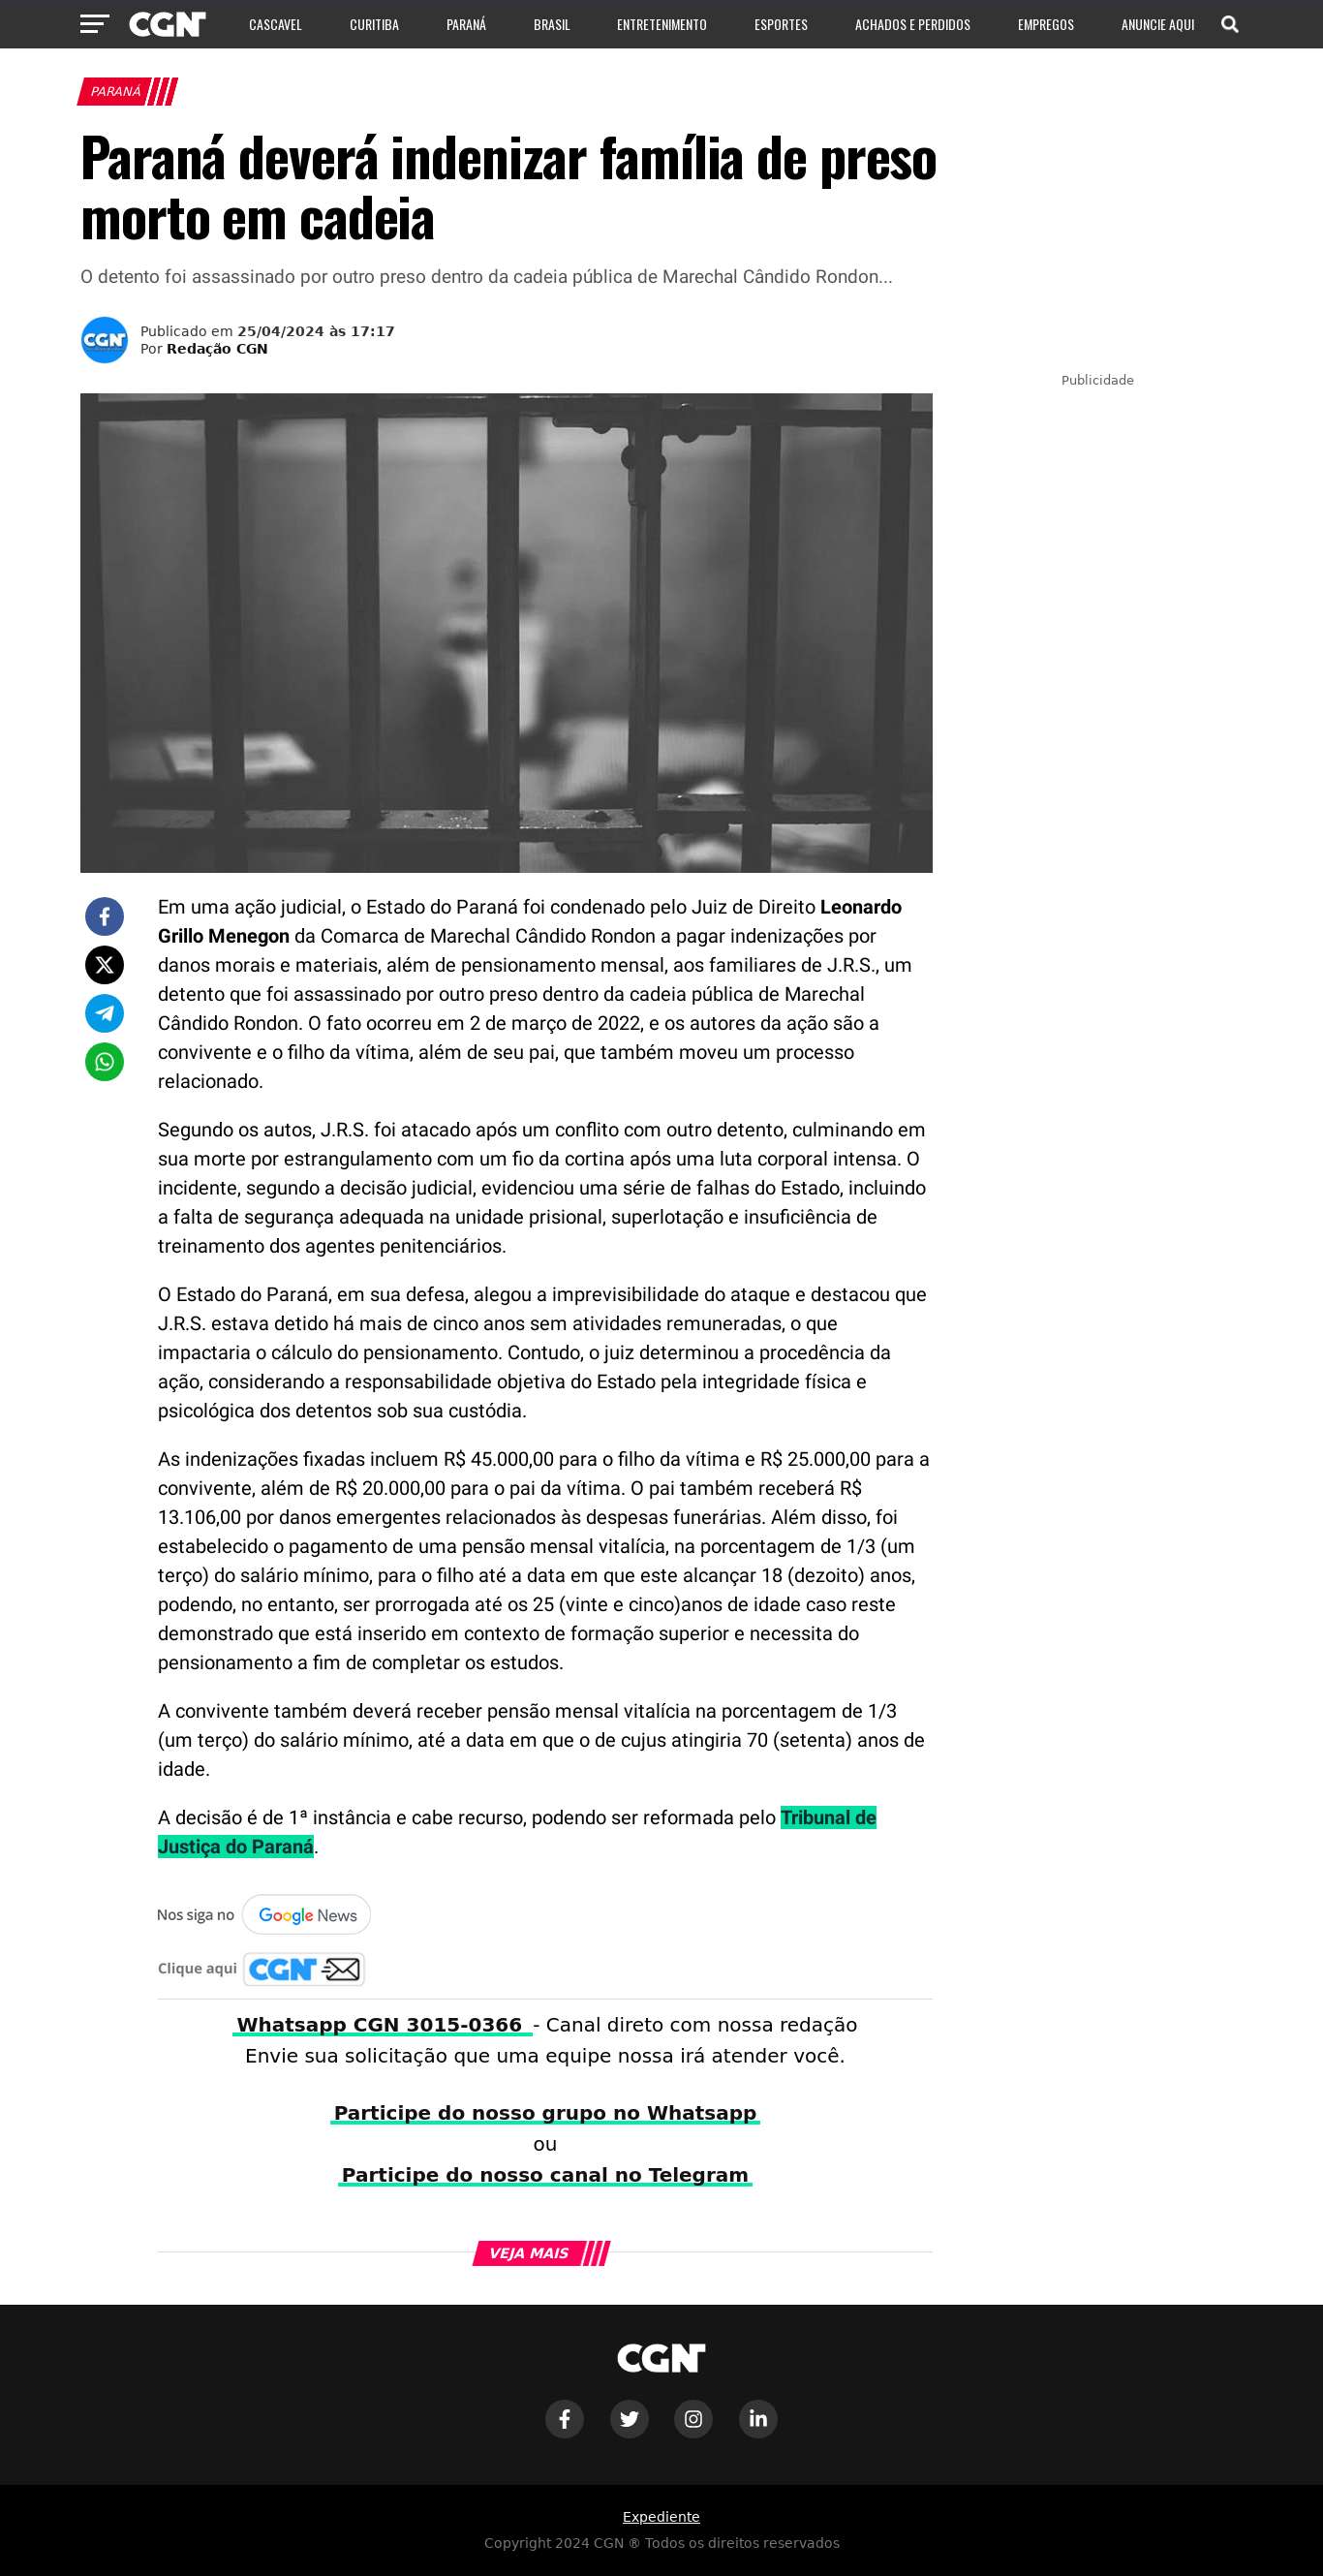 Paraná deverá indenizar família de preso morto em cadeia